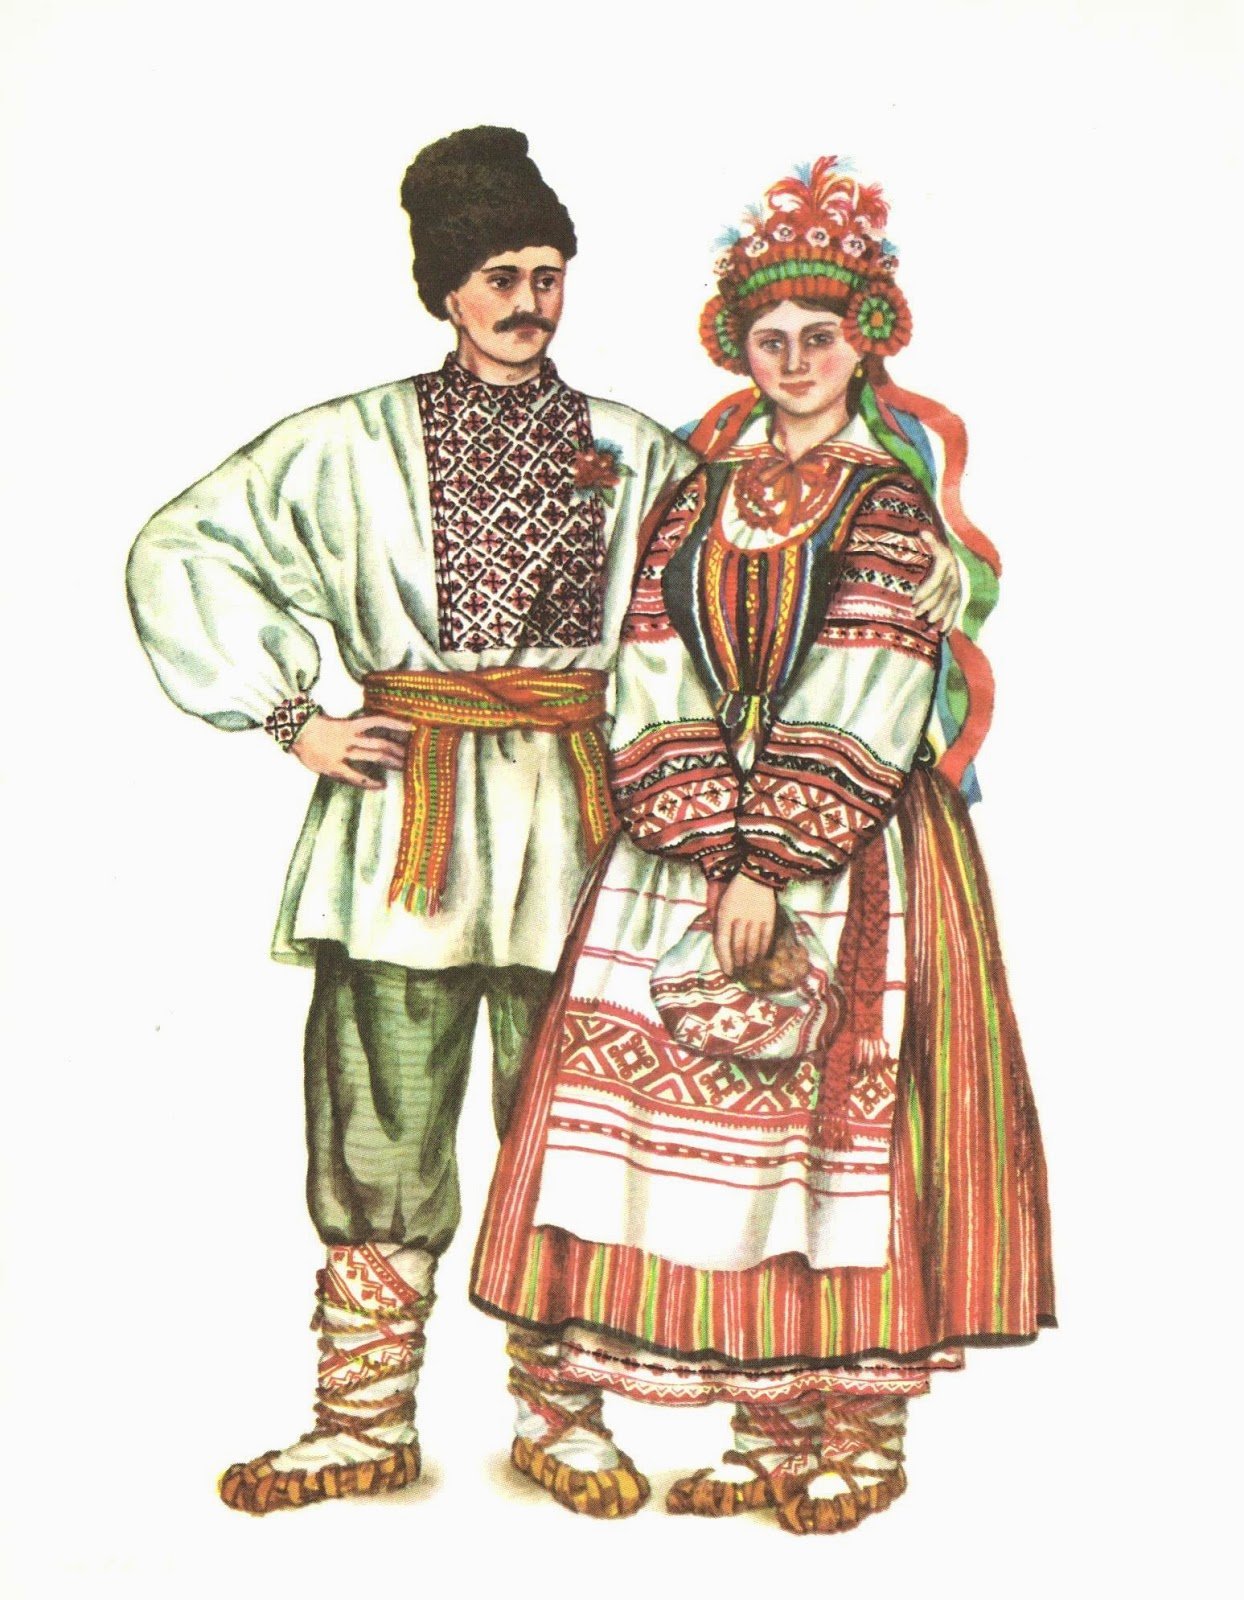 Украинцы в 18 веке. Национальная одежда украинцев 17 века. Национальный костюм народов Украины 17 века. Нац костюм украинцев 17 века. Украинские лапти лычаки.